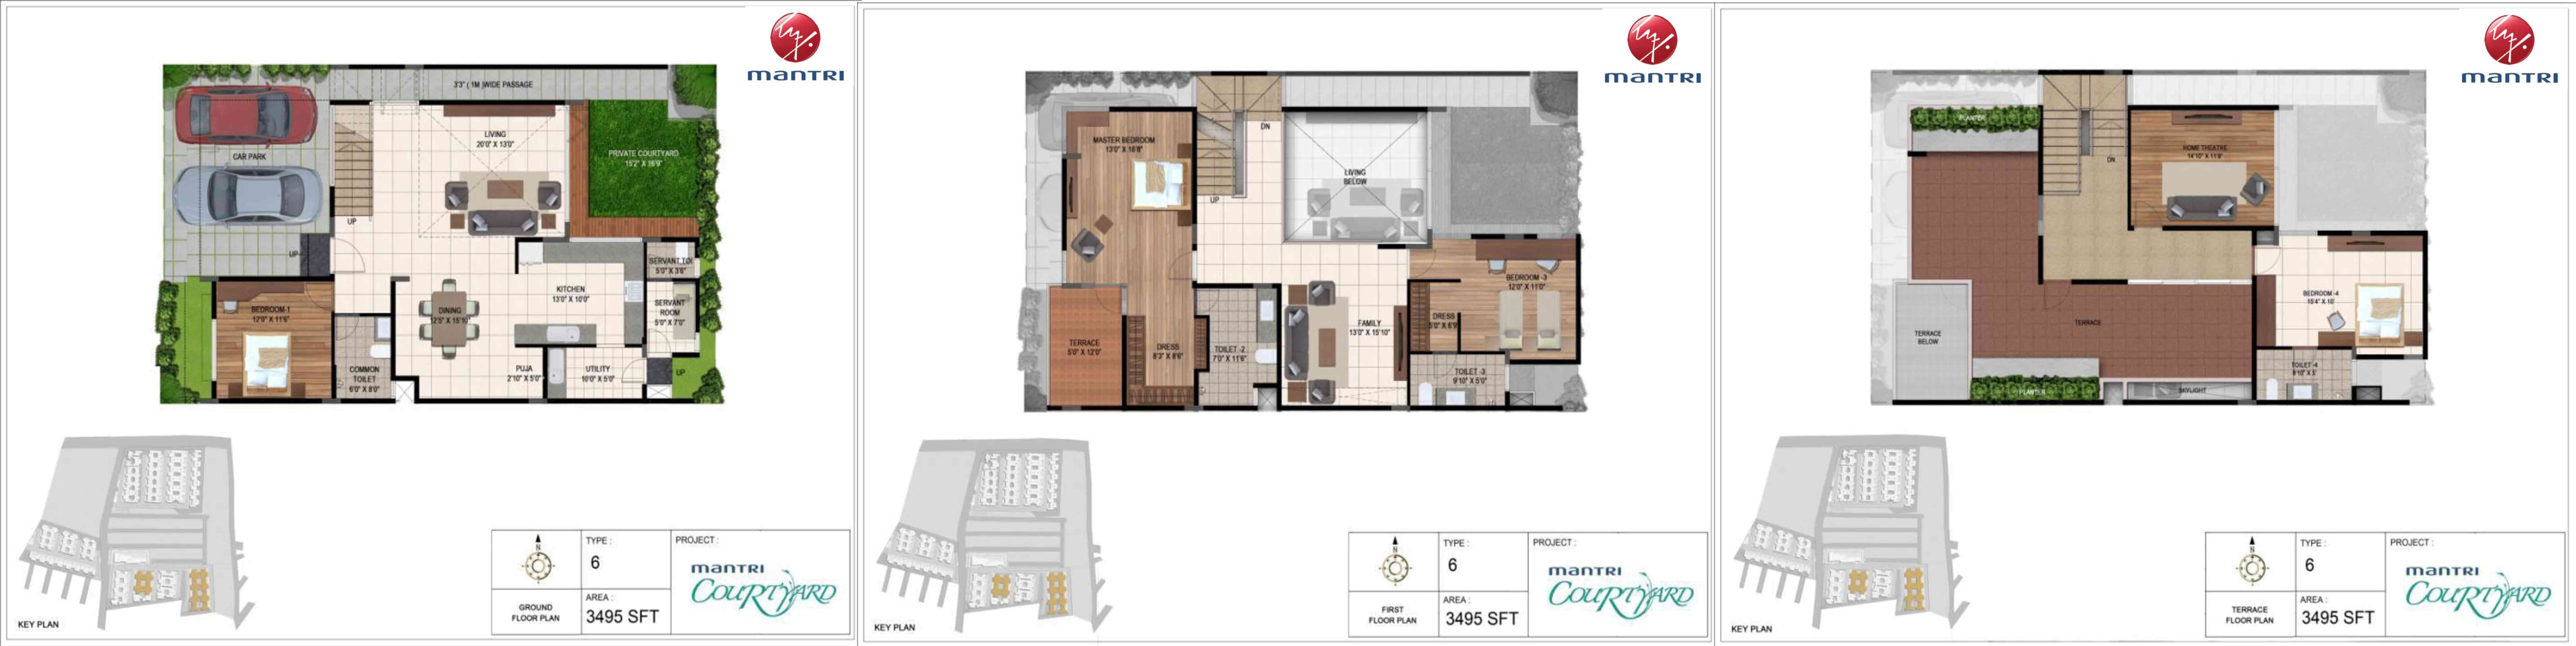 Mantri Courtyard Floor Plan